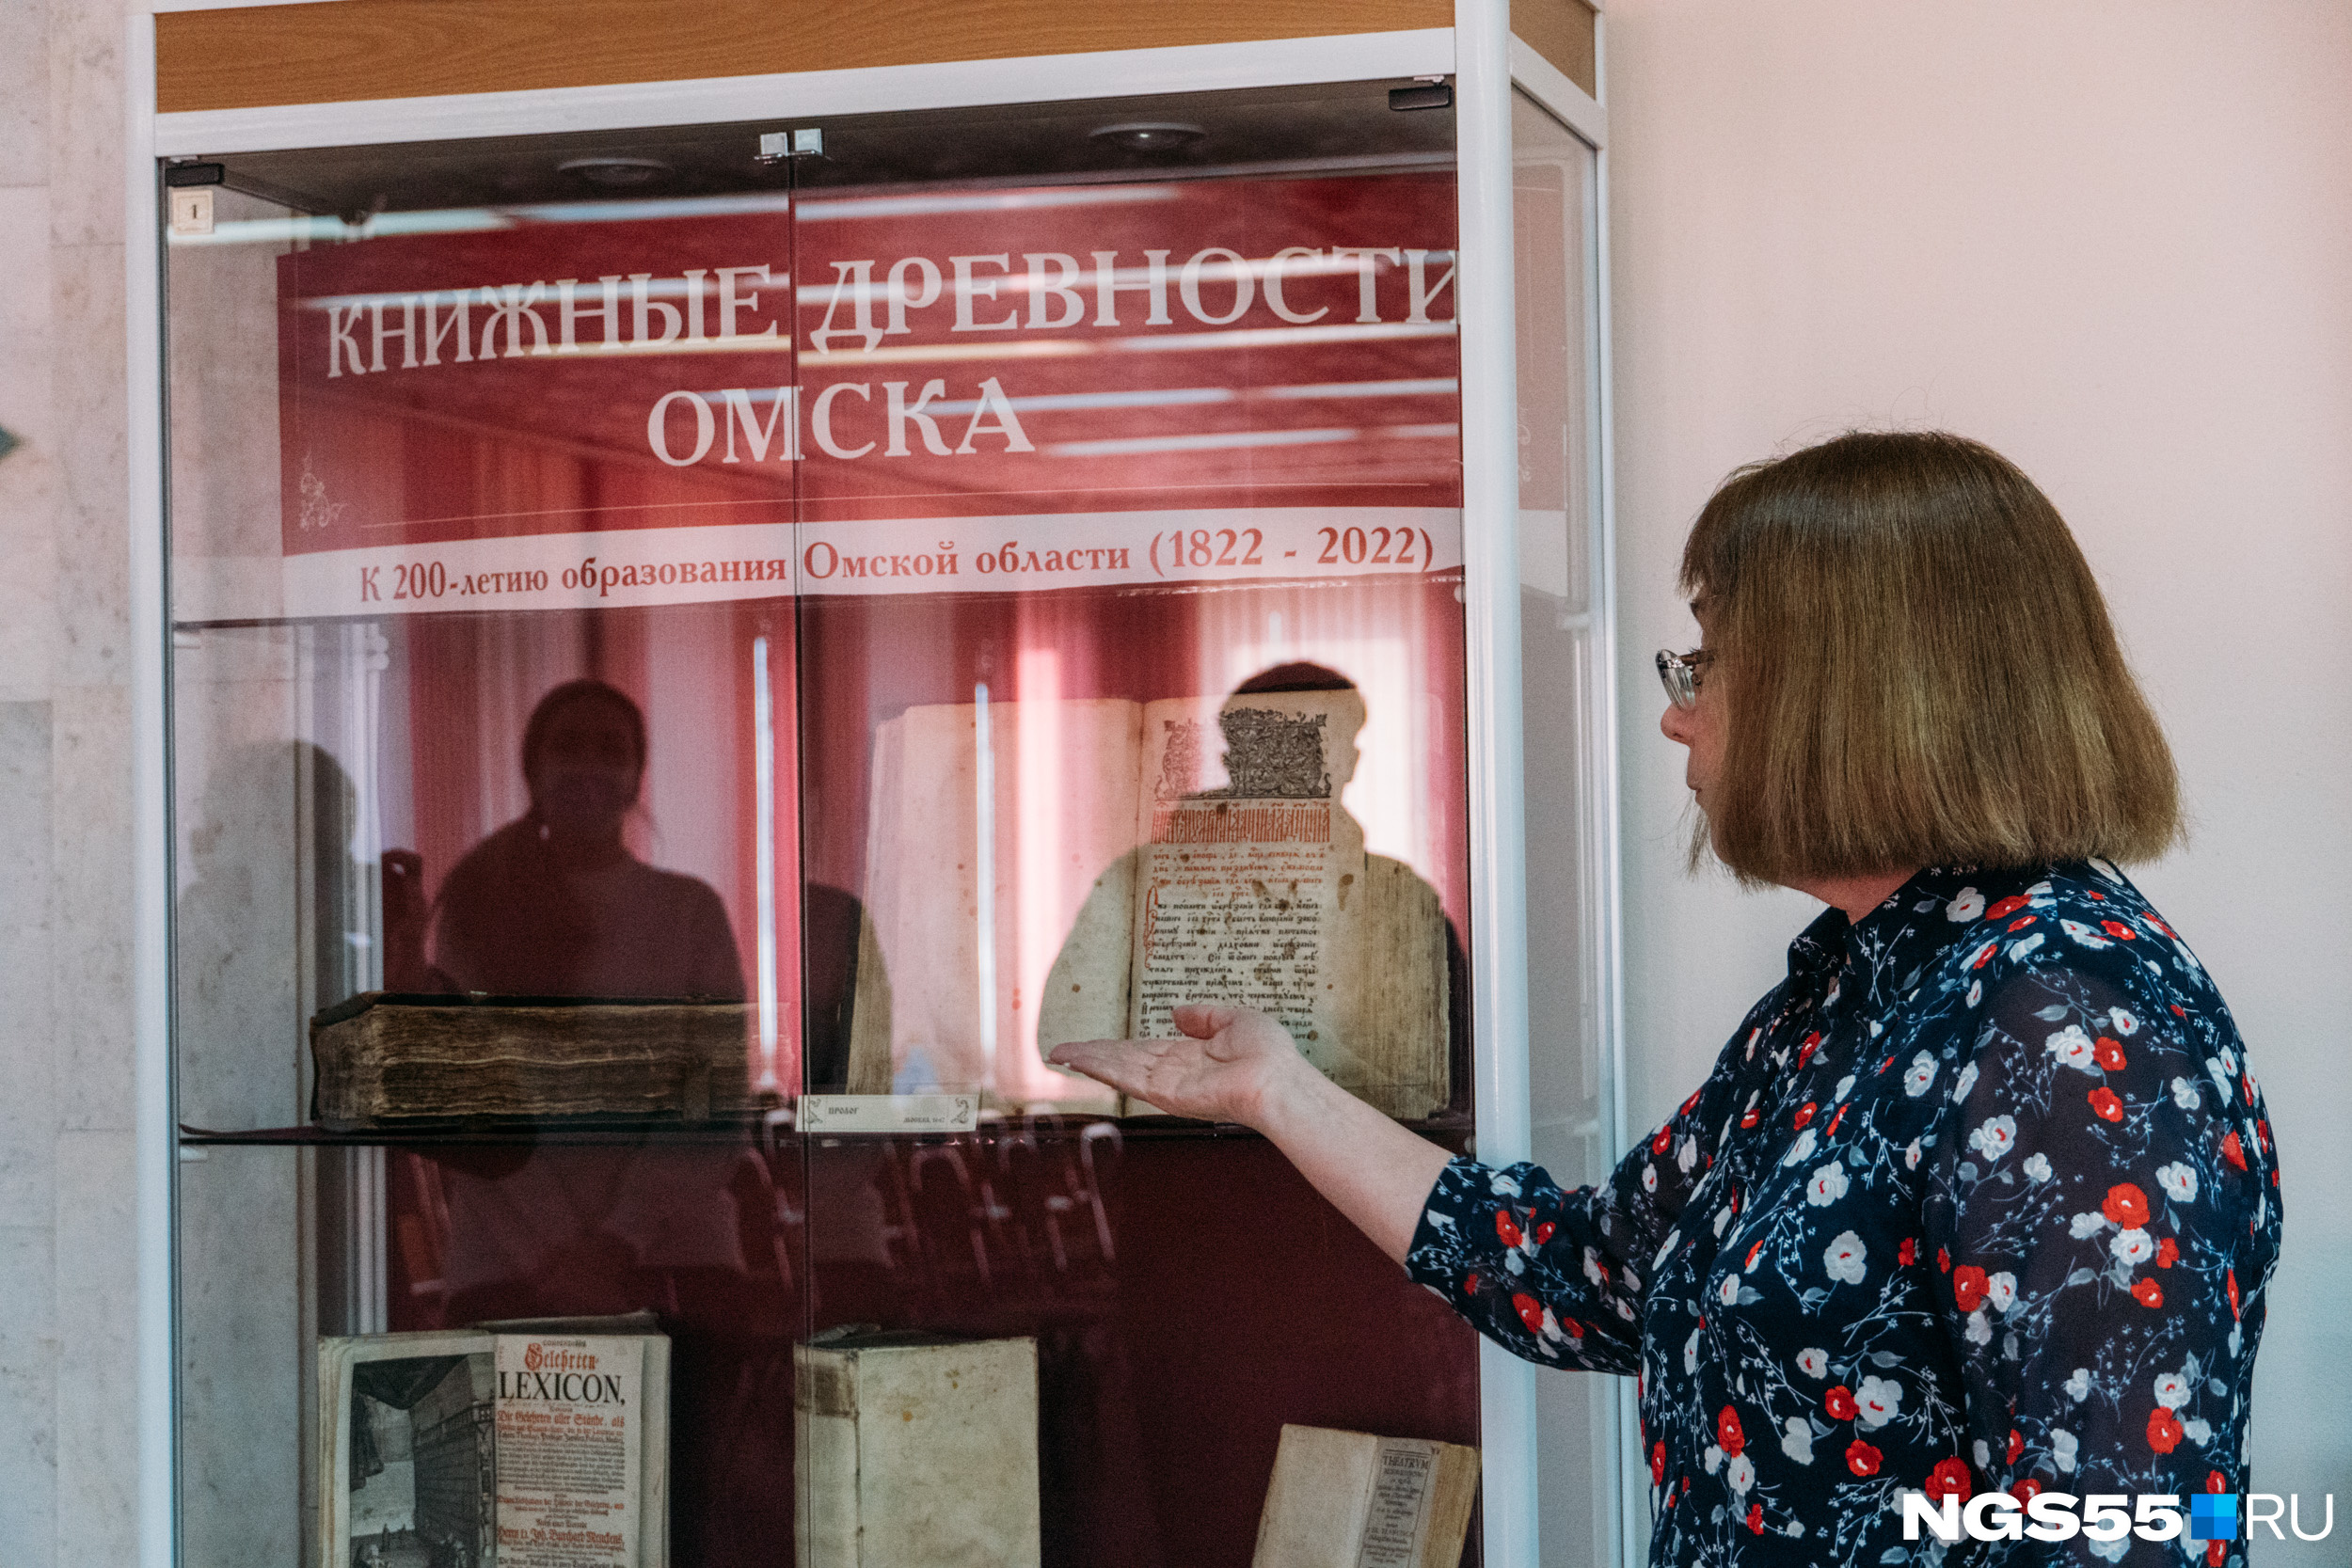 К юбилею в библиотеке устроили музей книжных древностей Омска